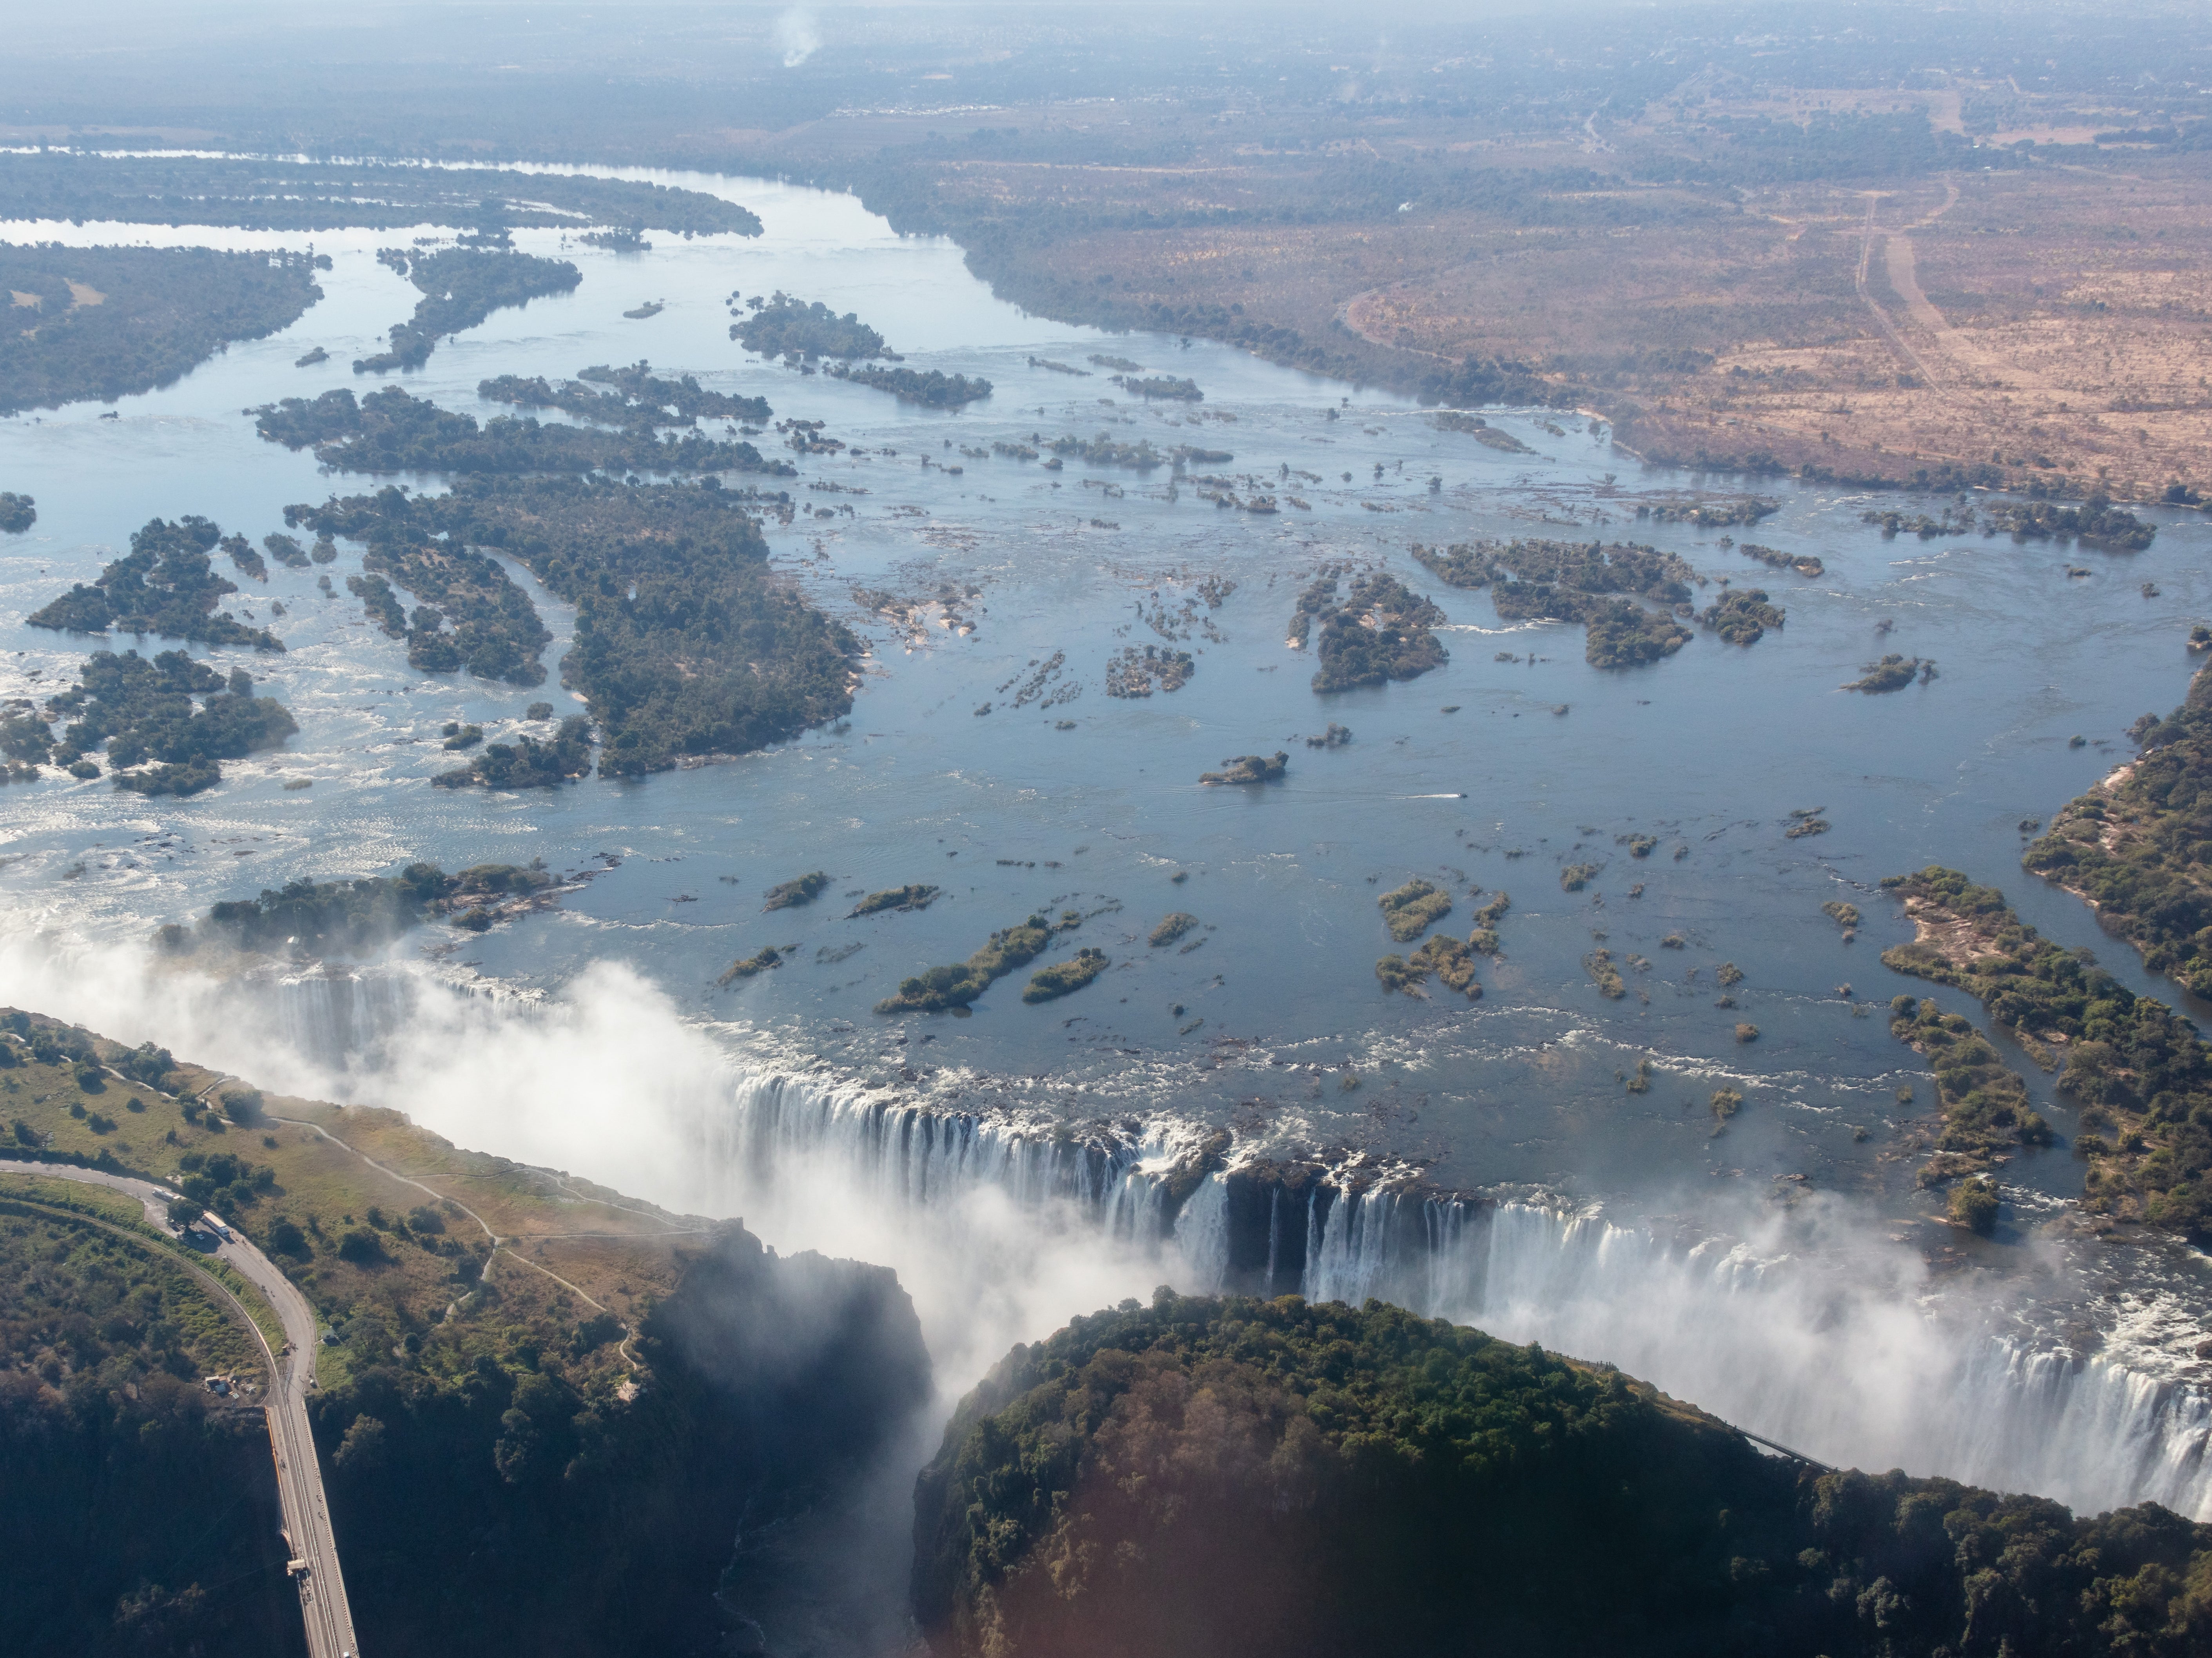 The crocodile attack happened in a river below the Victoria Falls in Zambia